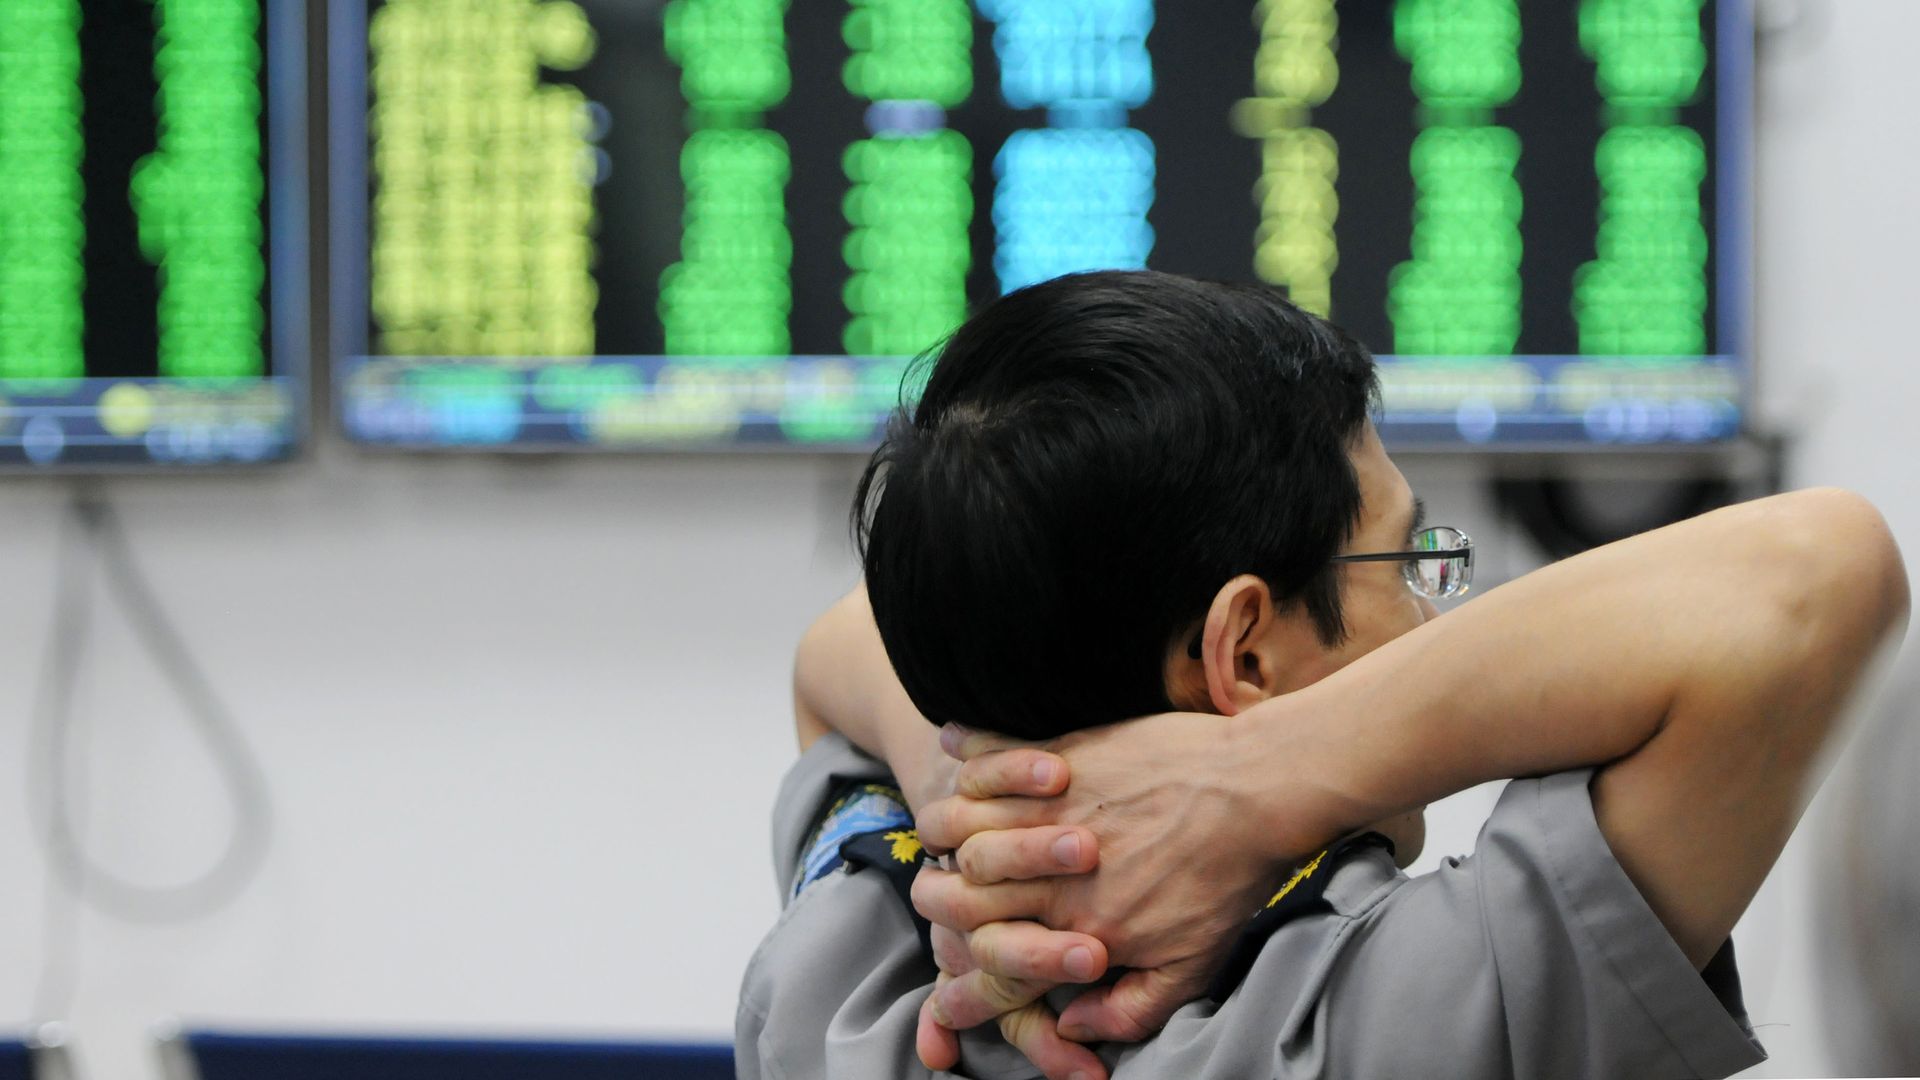 A security guard watching China stocks plummet